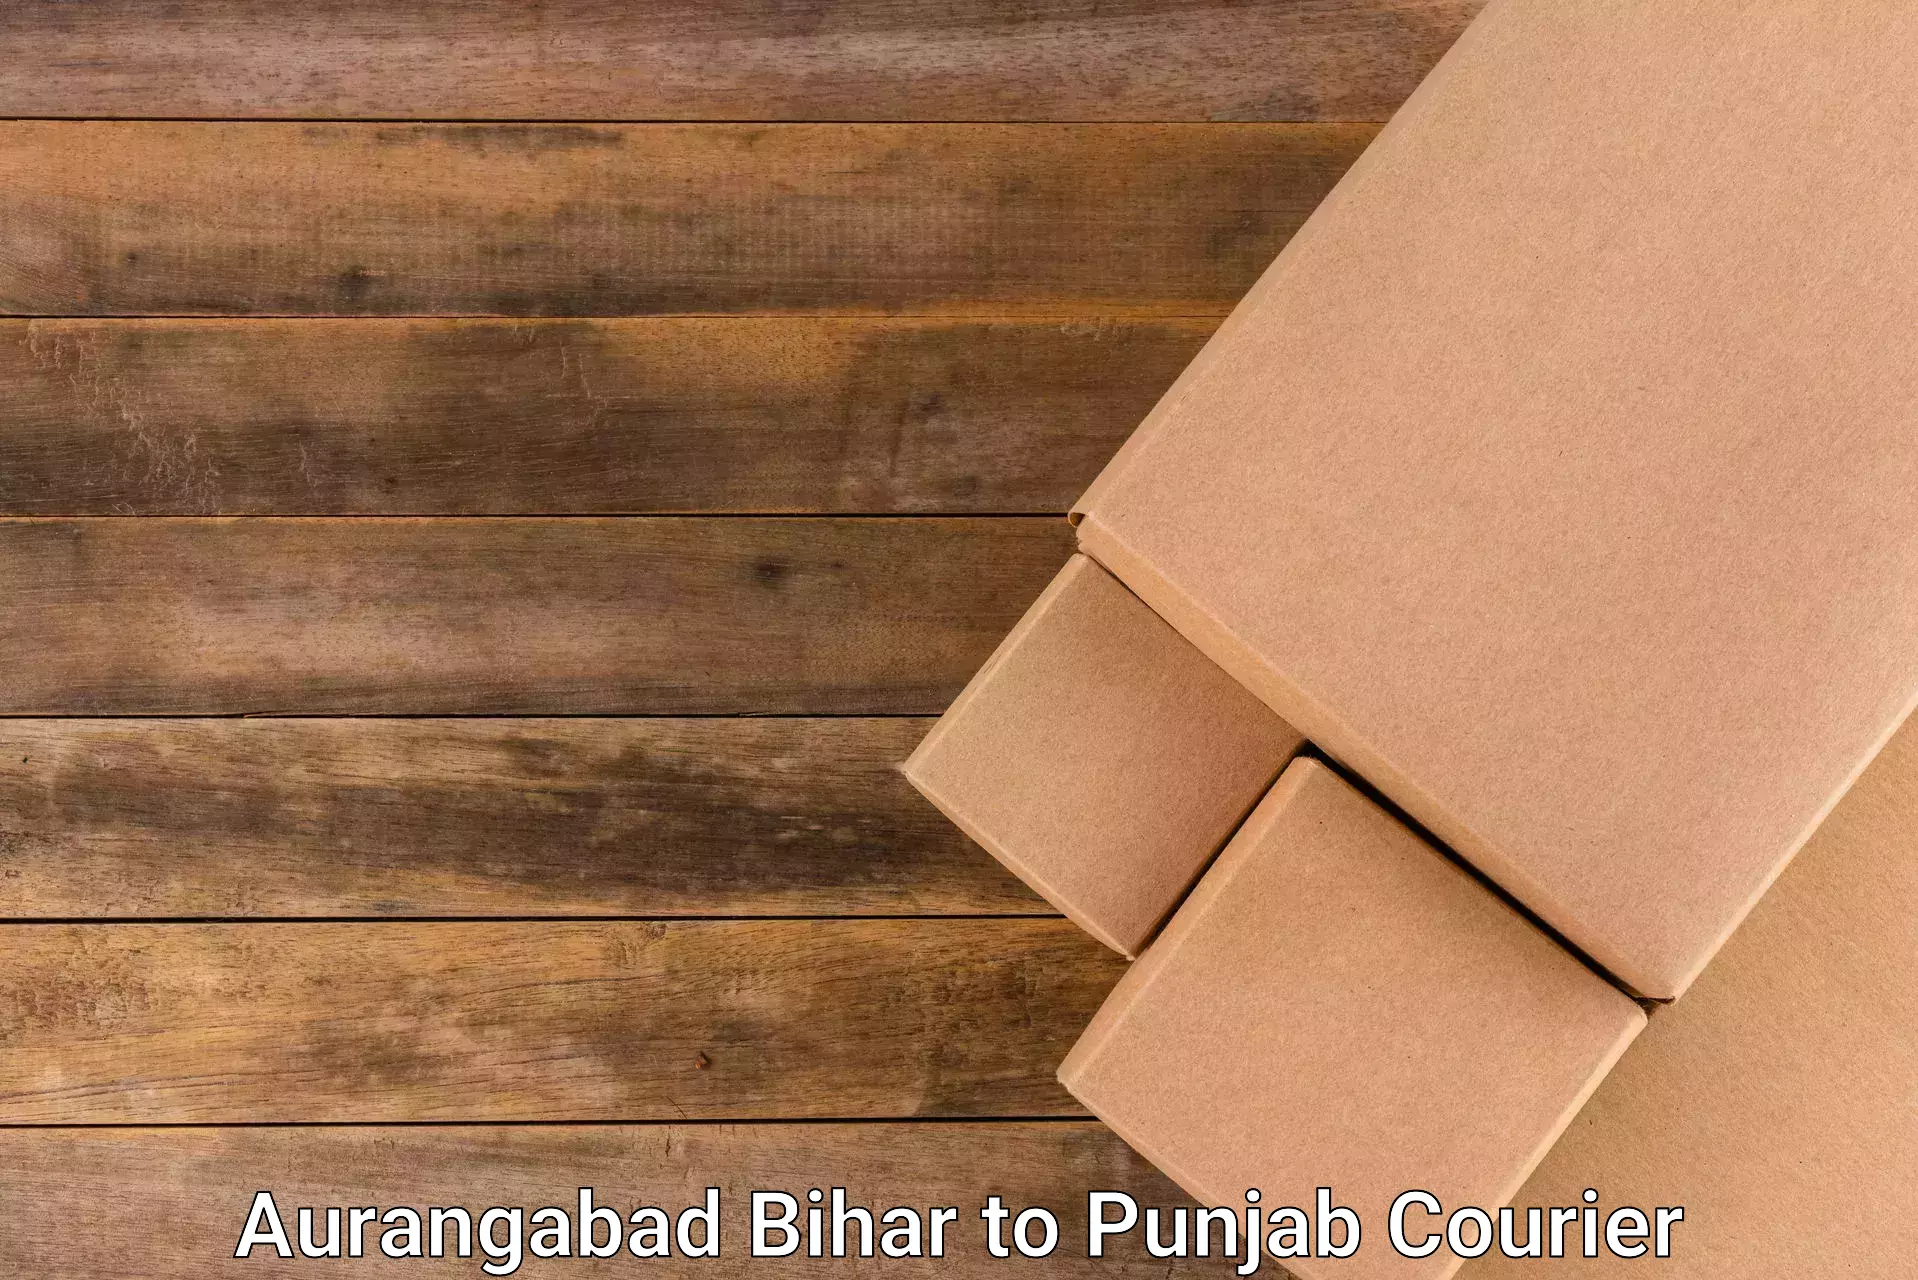 Door-to-door freight service Aurangabad Bihar to Punjab